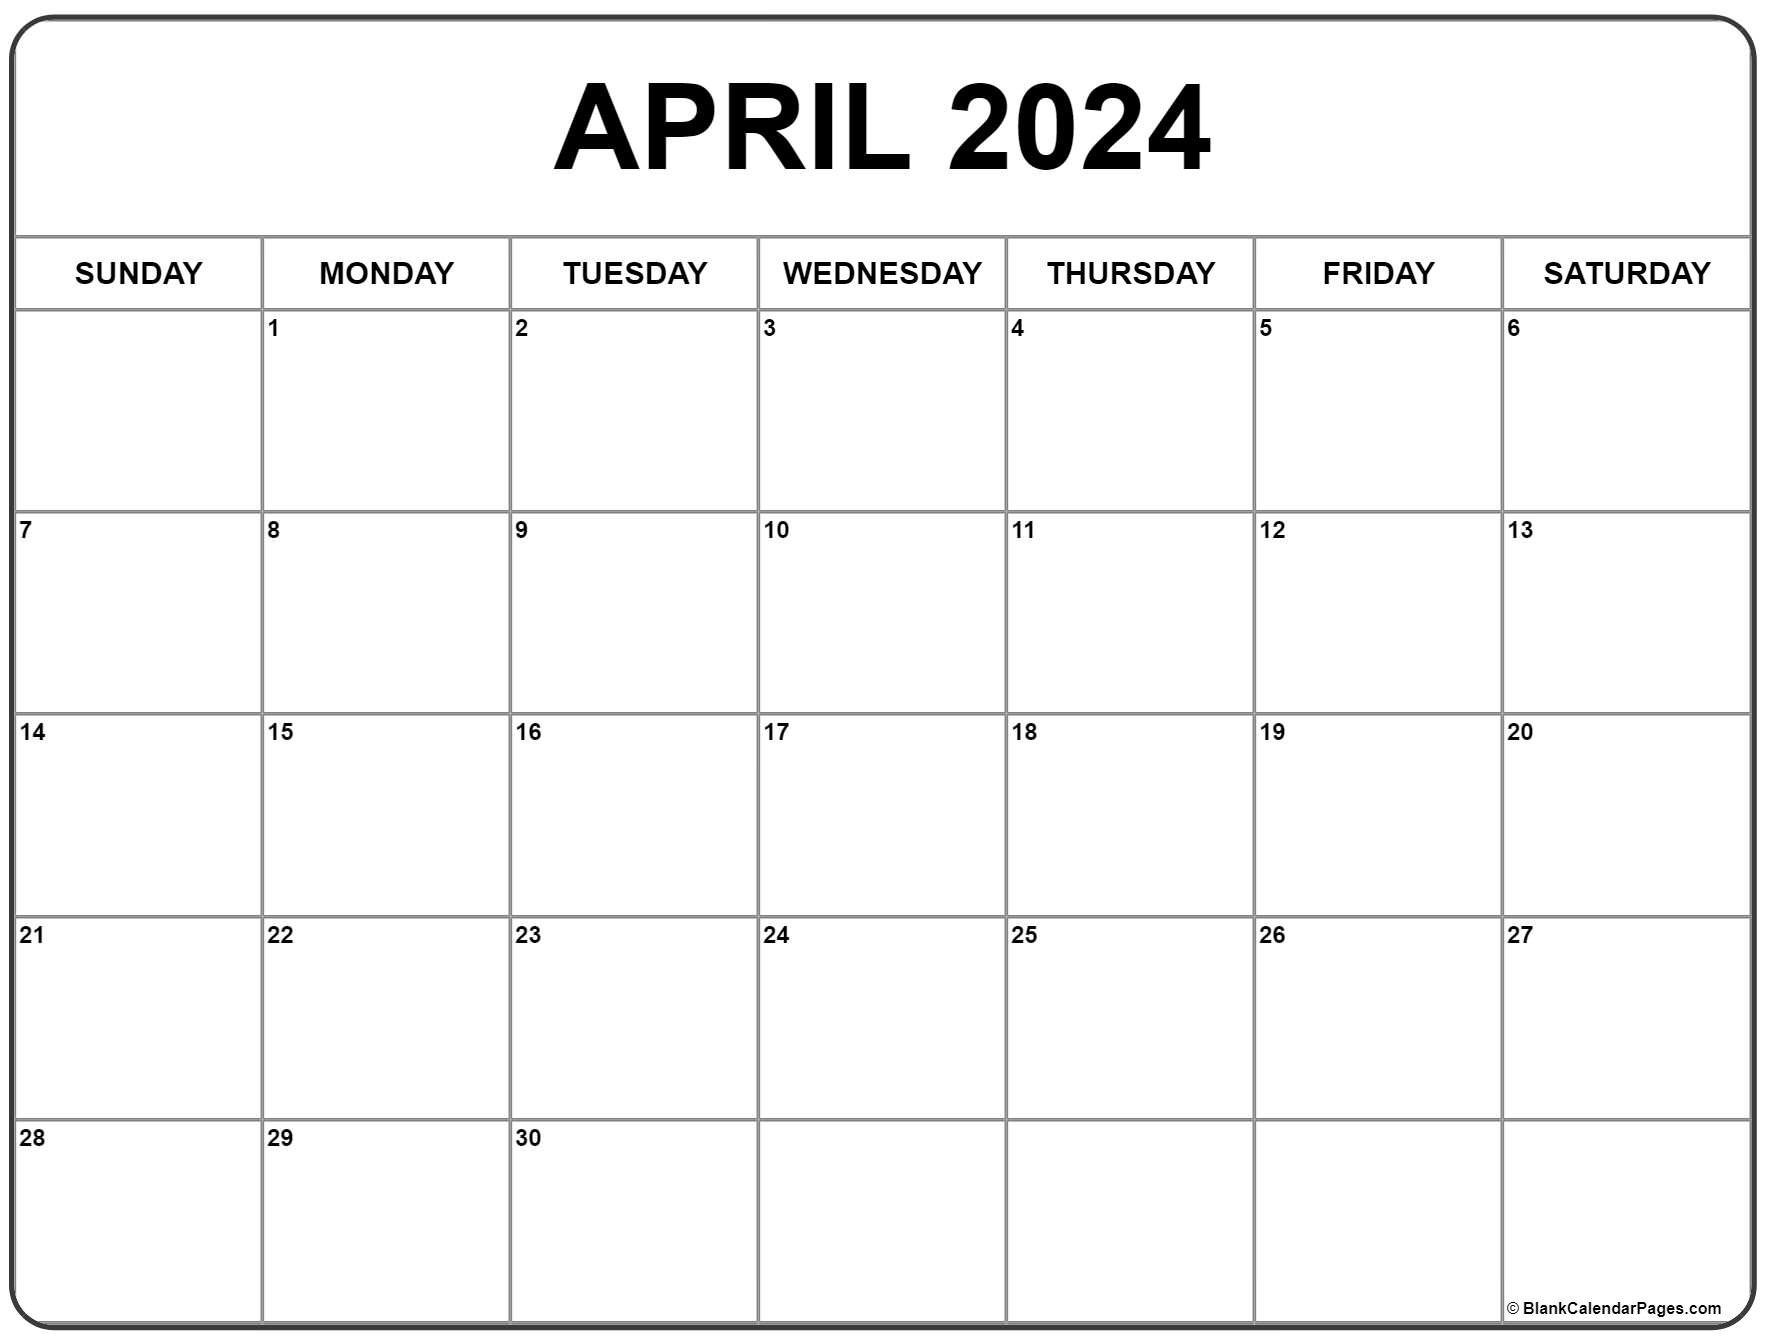 April 2024 Calendar | Free Printable Calendar for Free Printable April 2024 Calendar